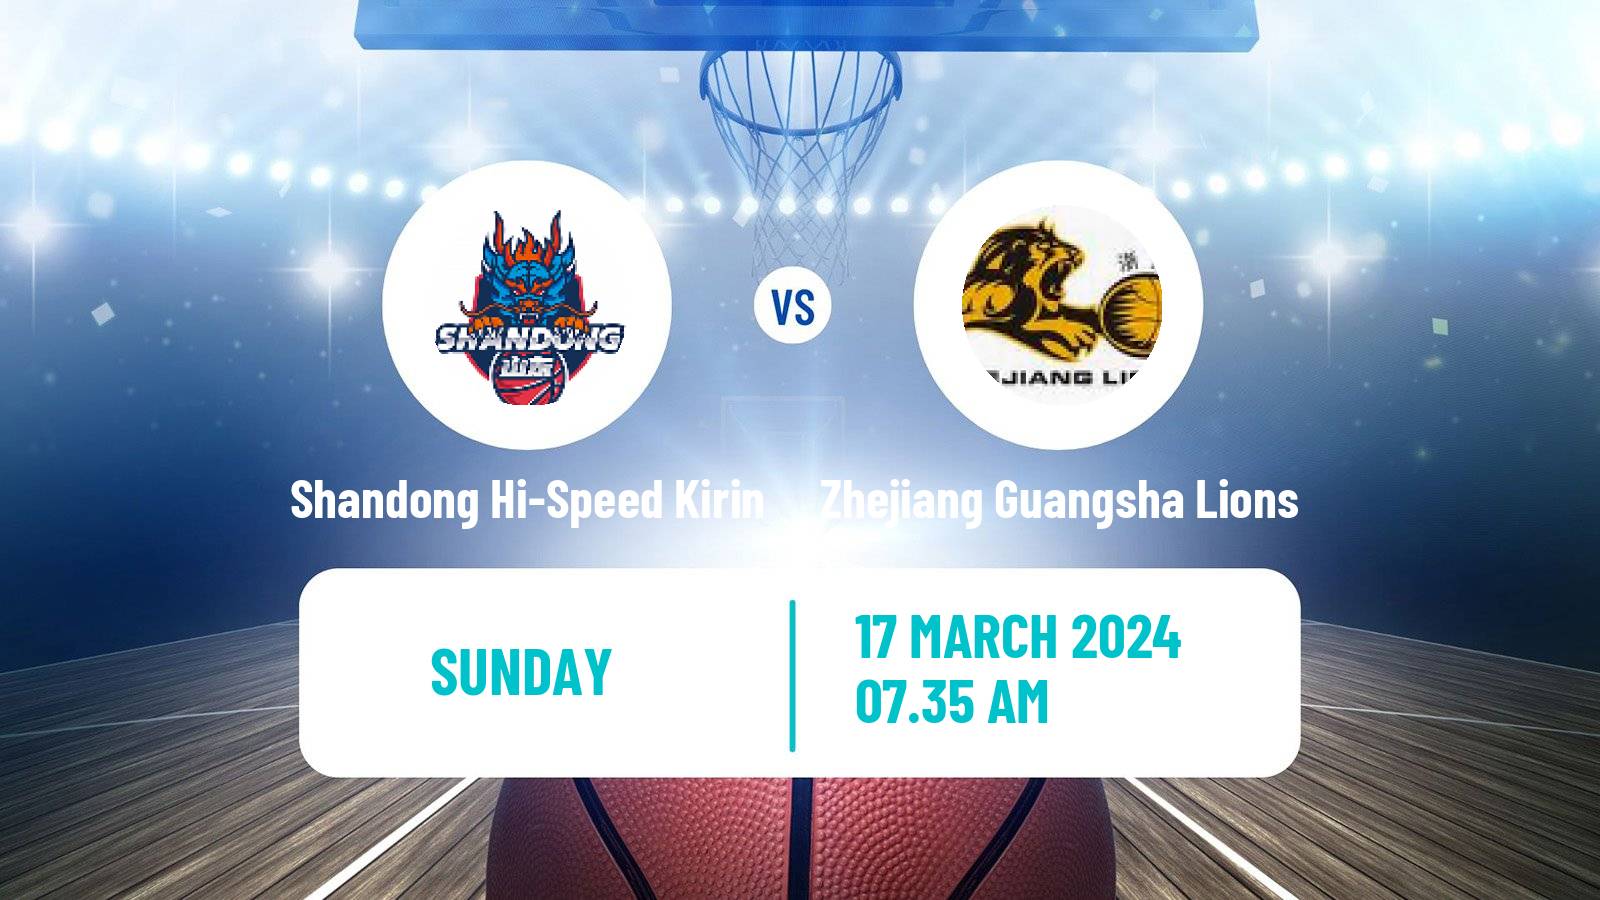 Basketball CBA Shandong Hi-Speed Kirin - Zhejiang Guangsha Lions